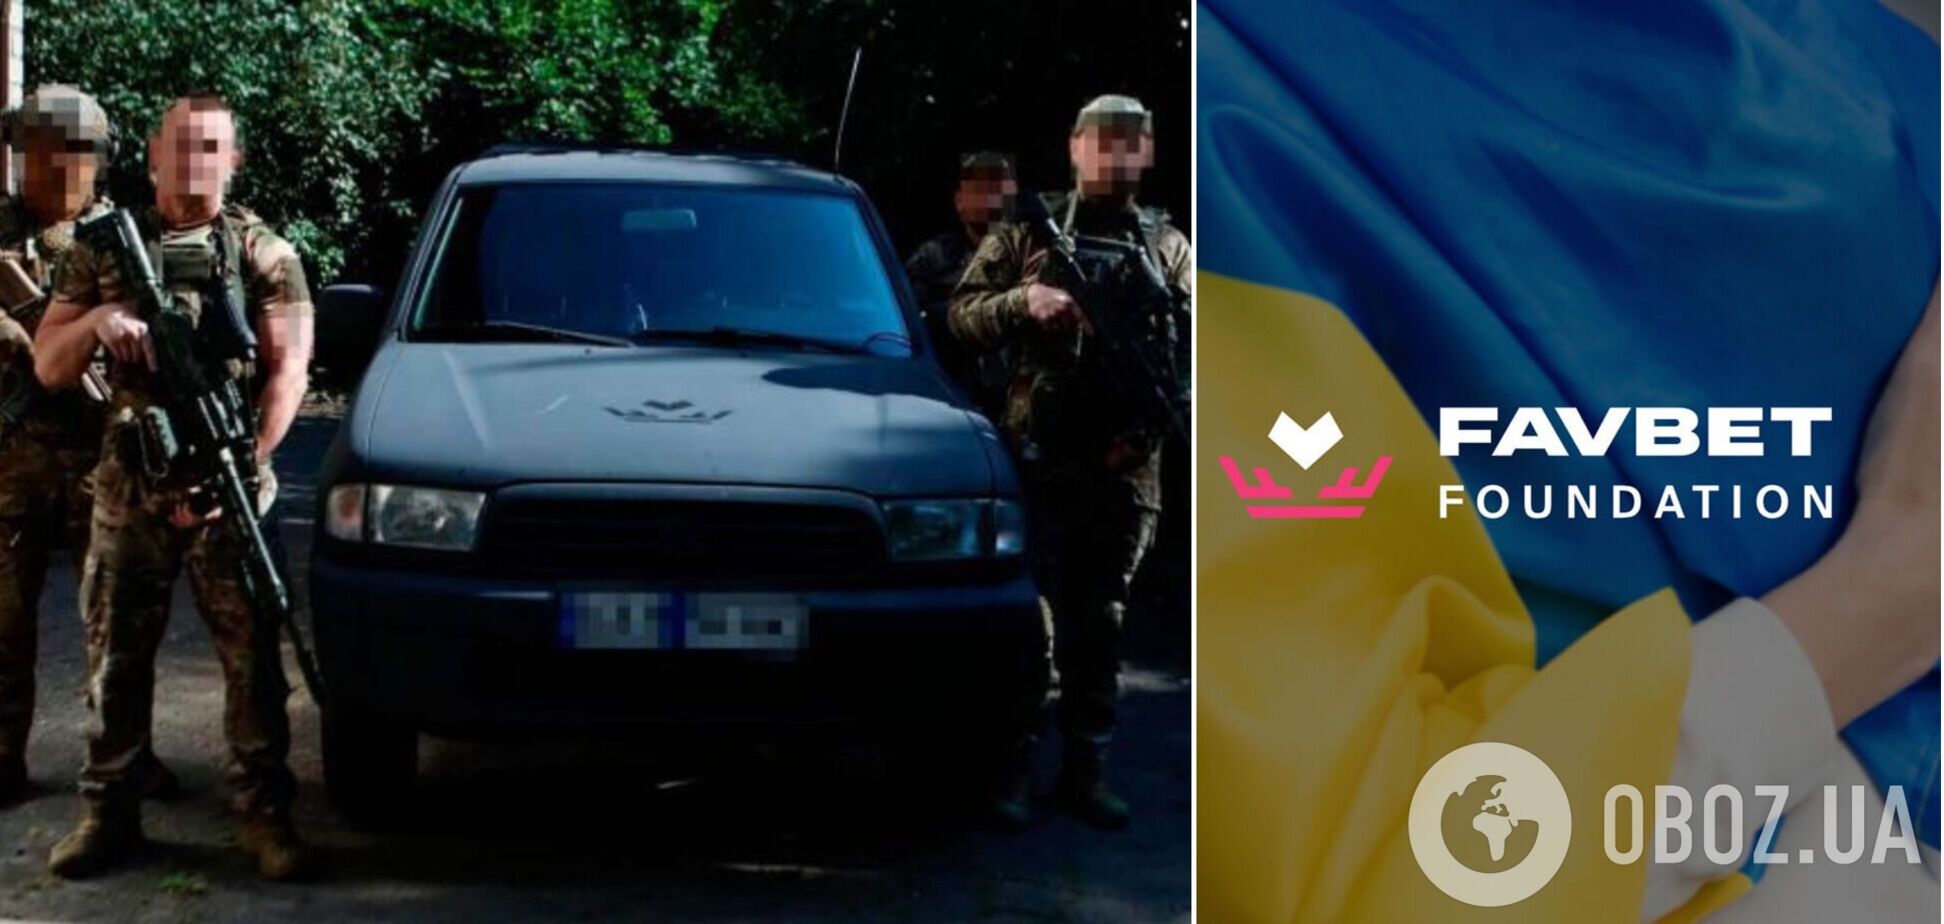 Спецназовцы ВСУ получили внедорожник Mazda от Favbet Foundation